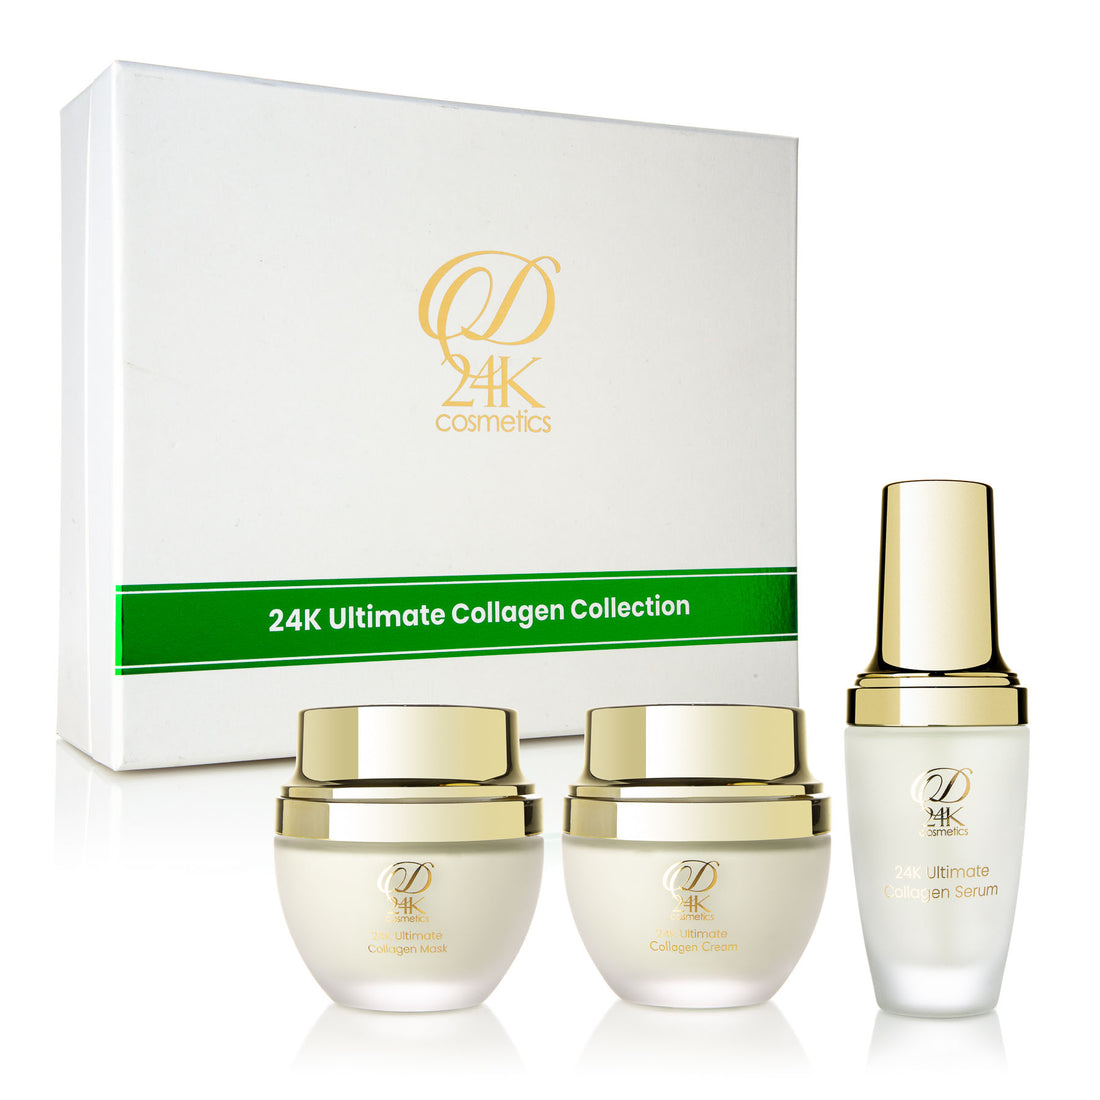 24K Collagen Renewal Set - Ultimate Collagen Cream / Ultimate Collagen Mask / Ultimate Collagen Serum